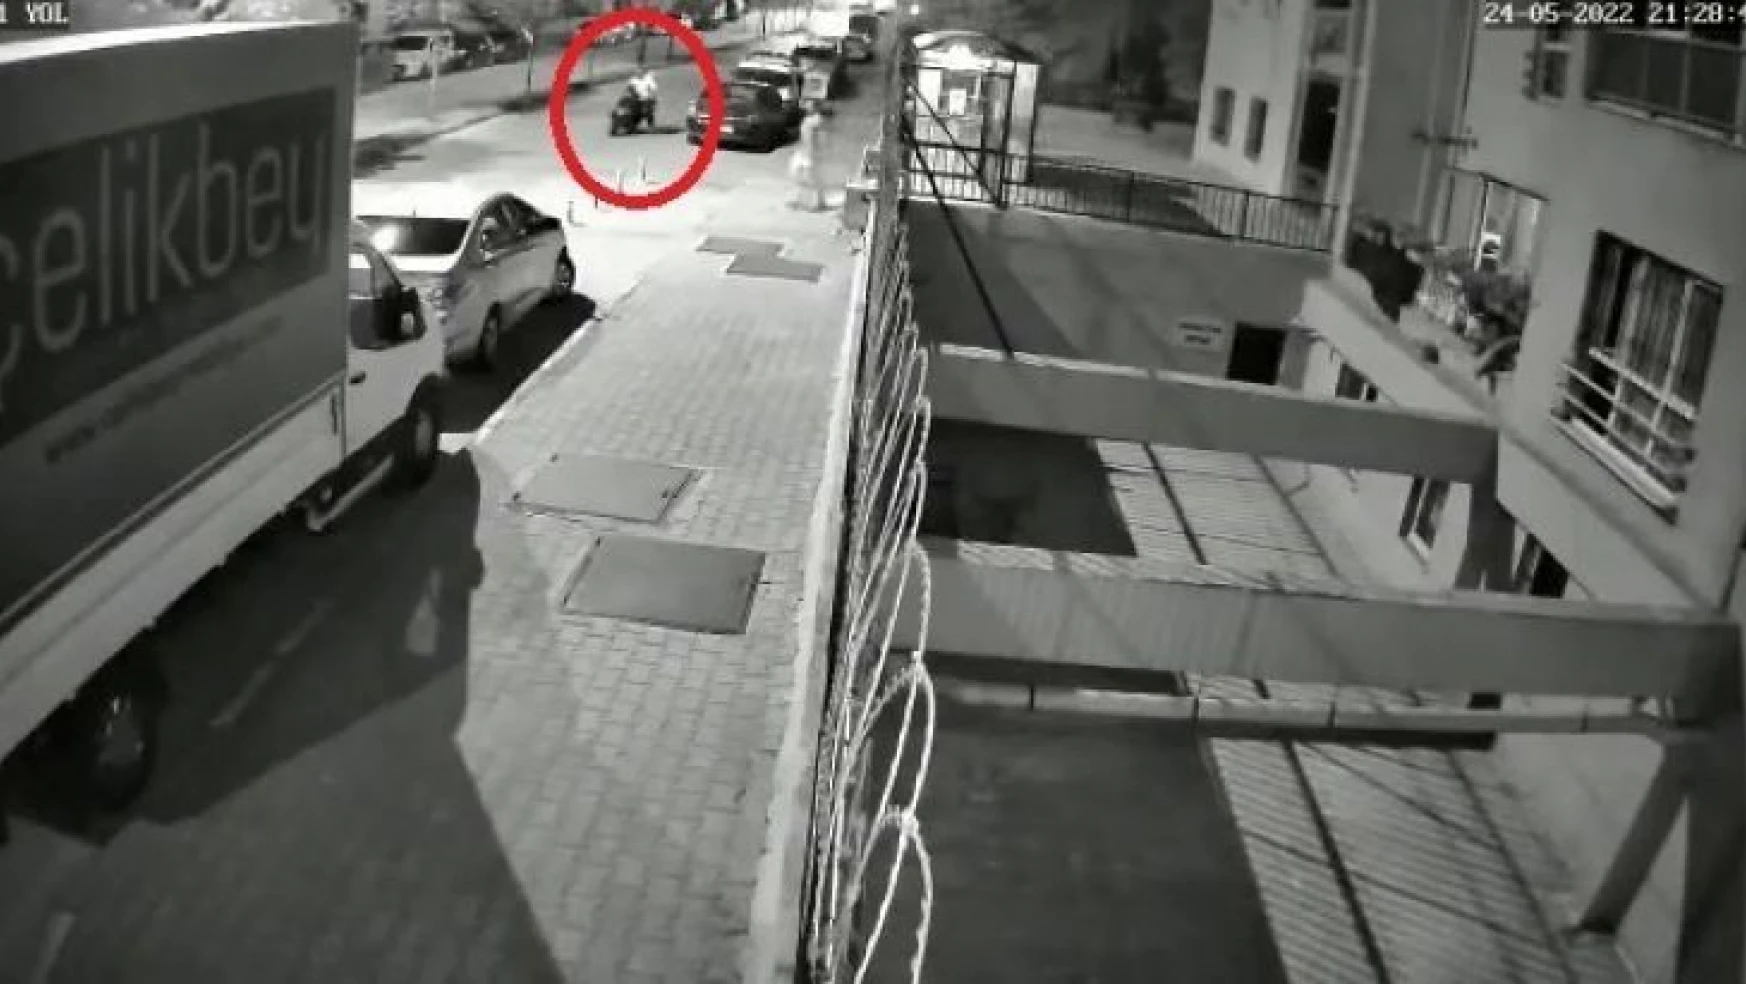 Bursa'da göz göre göre motosiklet hırsızlığı kamerada